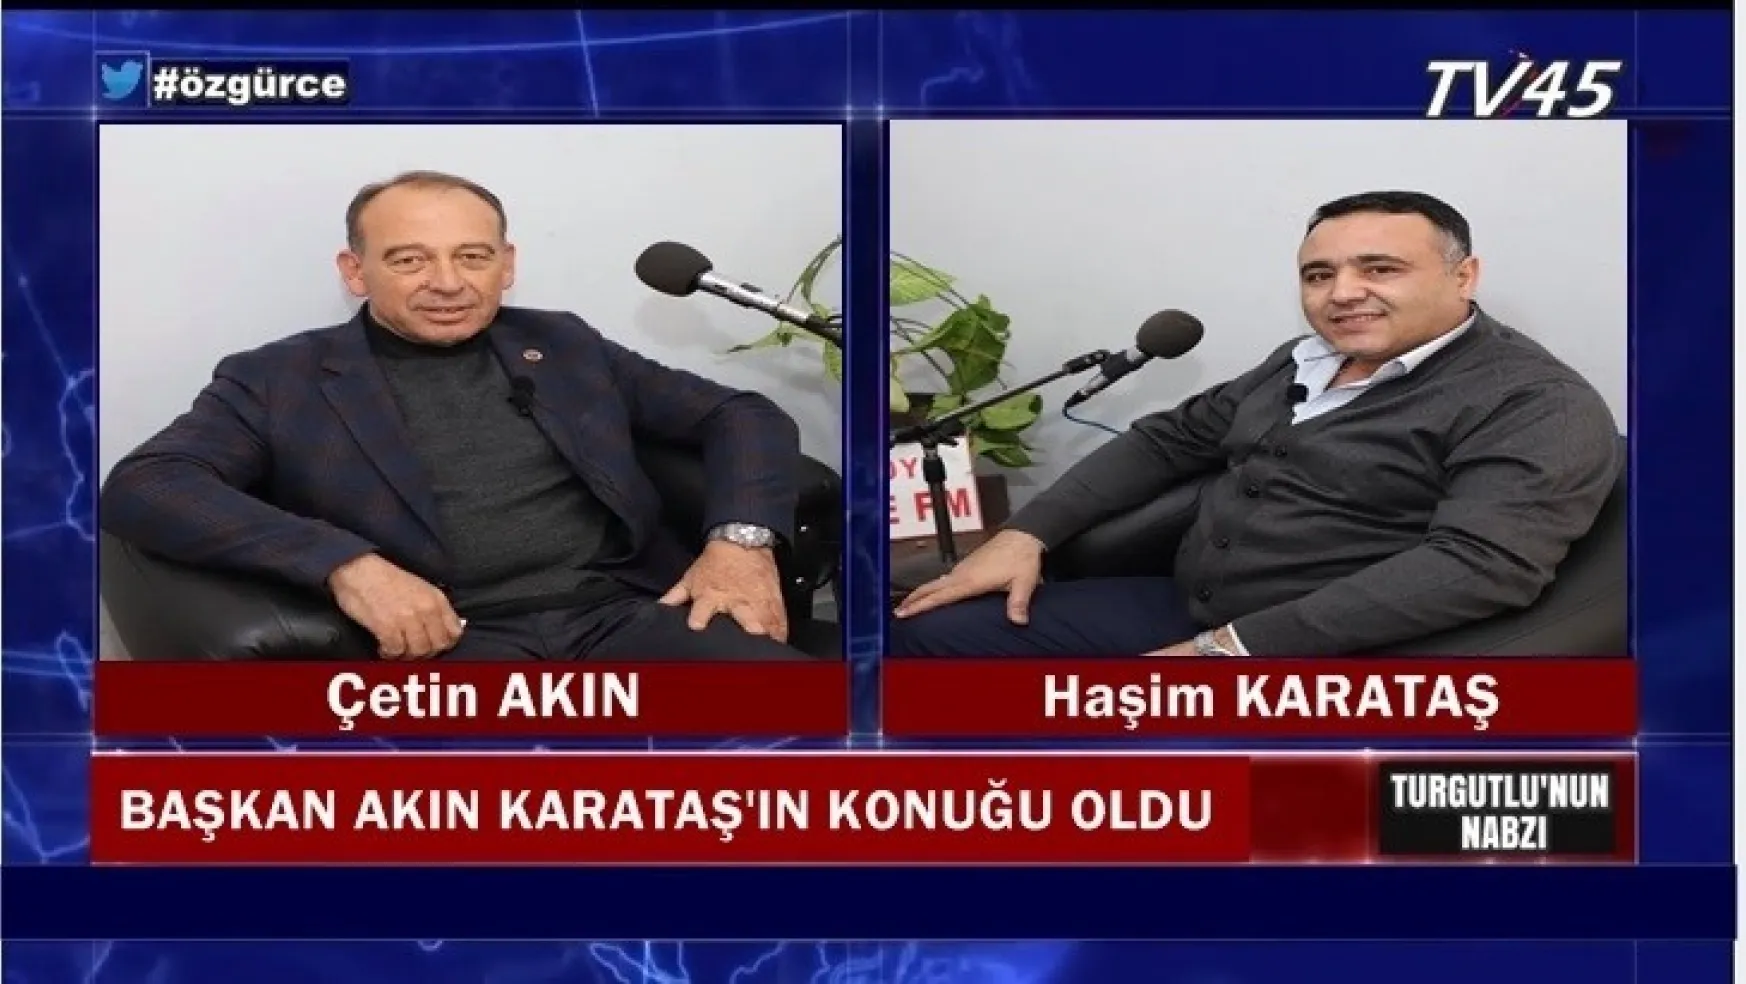 Başkan Akın Karataş'ın sorularını açık yüreklilikle cevapladı (Video)